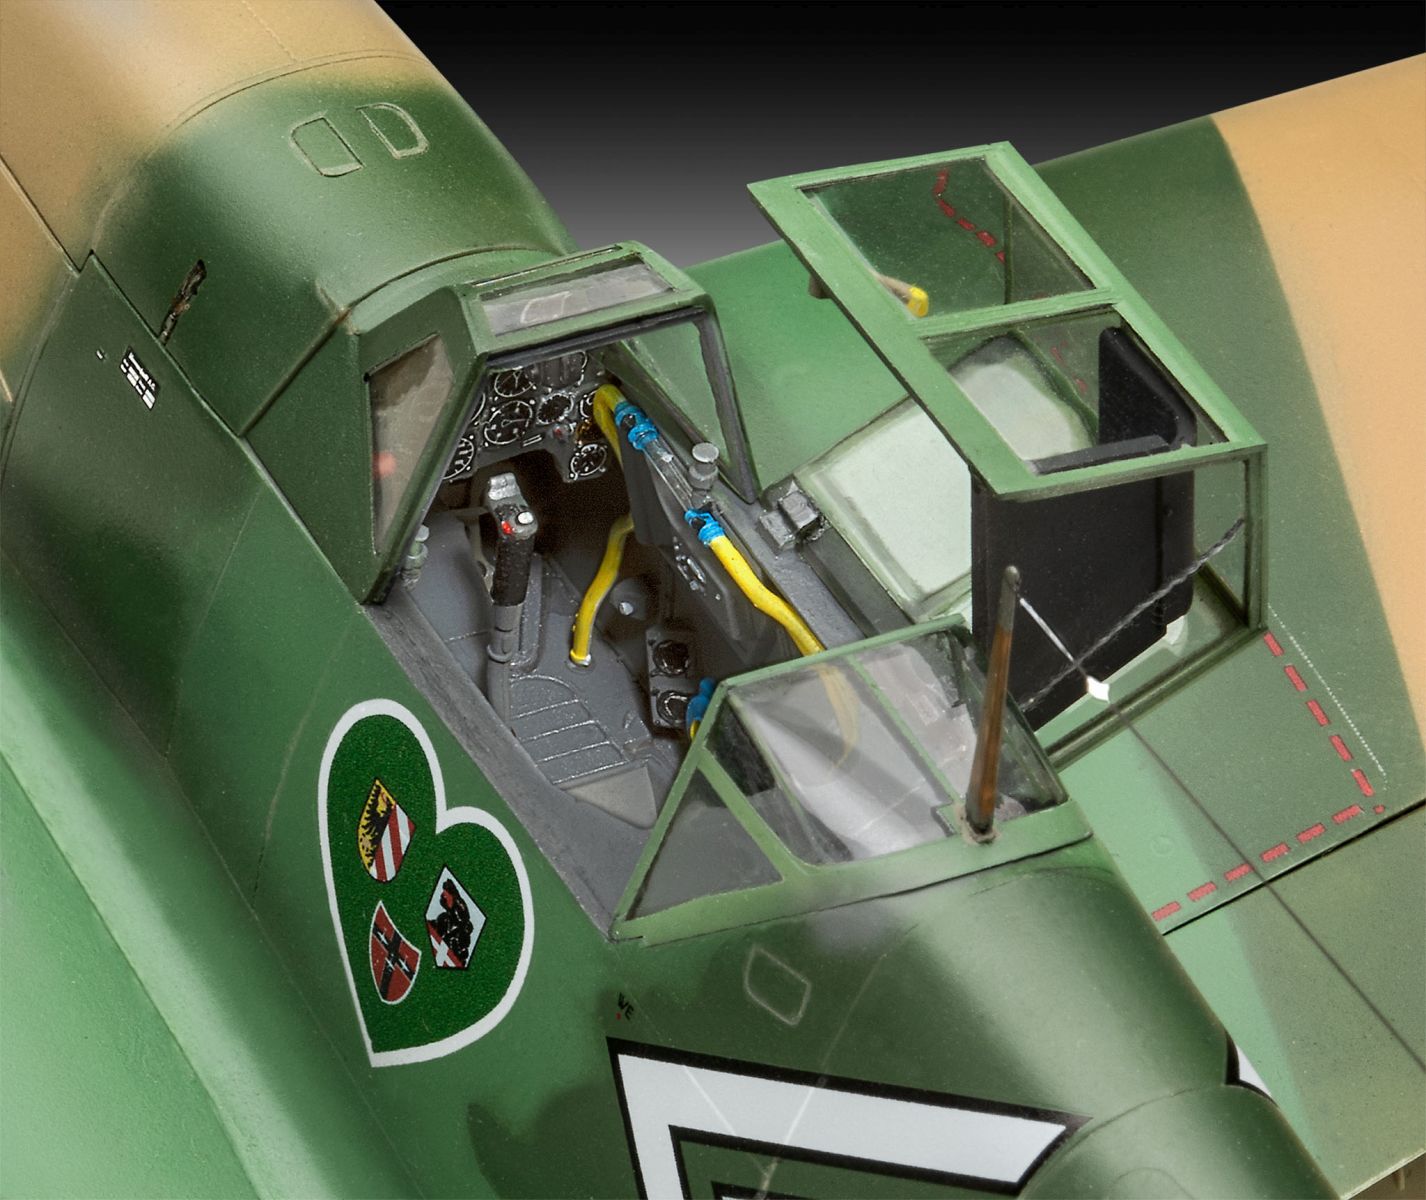 Revell 03829 - Messerschmitt Bf109 G-2/4